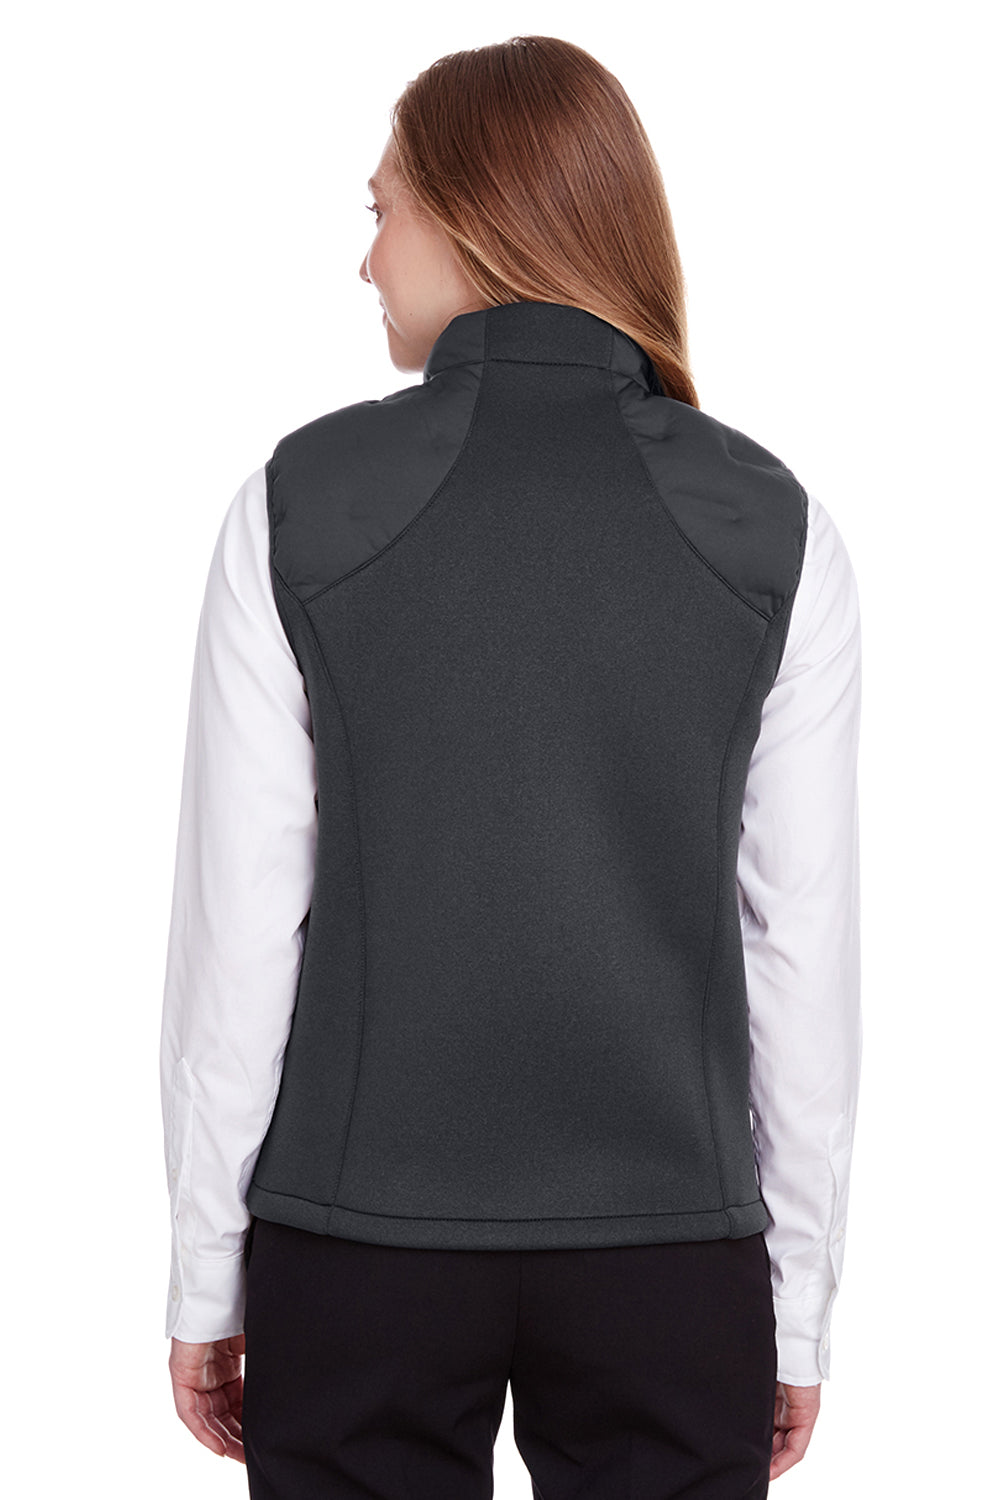 North End NE709W Womens Pioneer Hybrid Waterproof Full Zip Vest Carbon Grey/Black Back